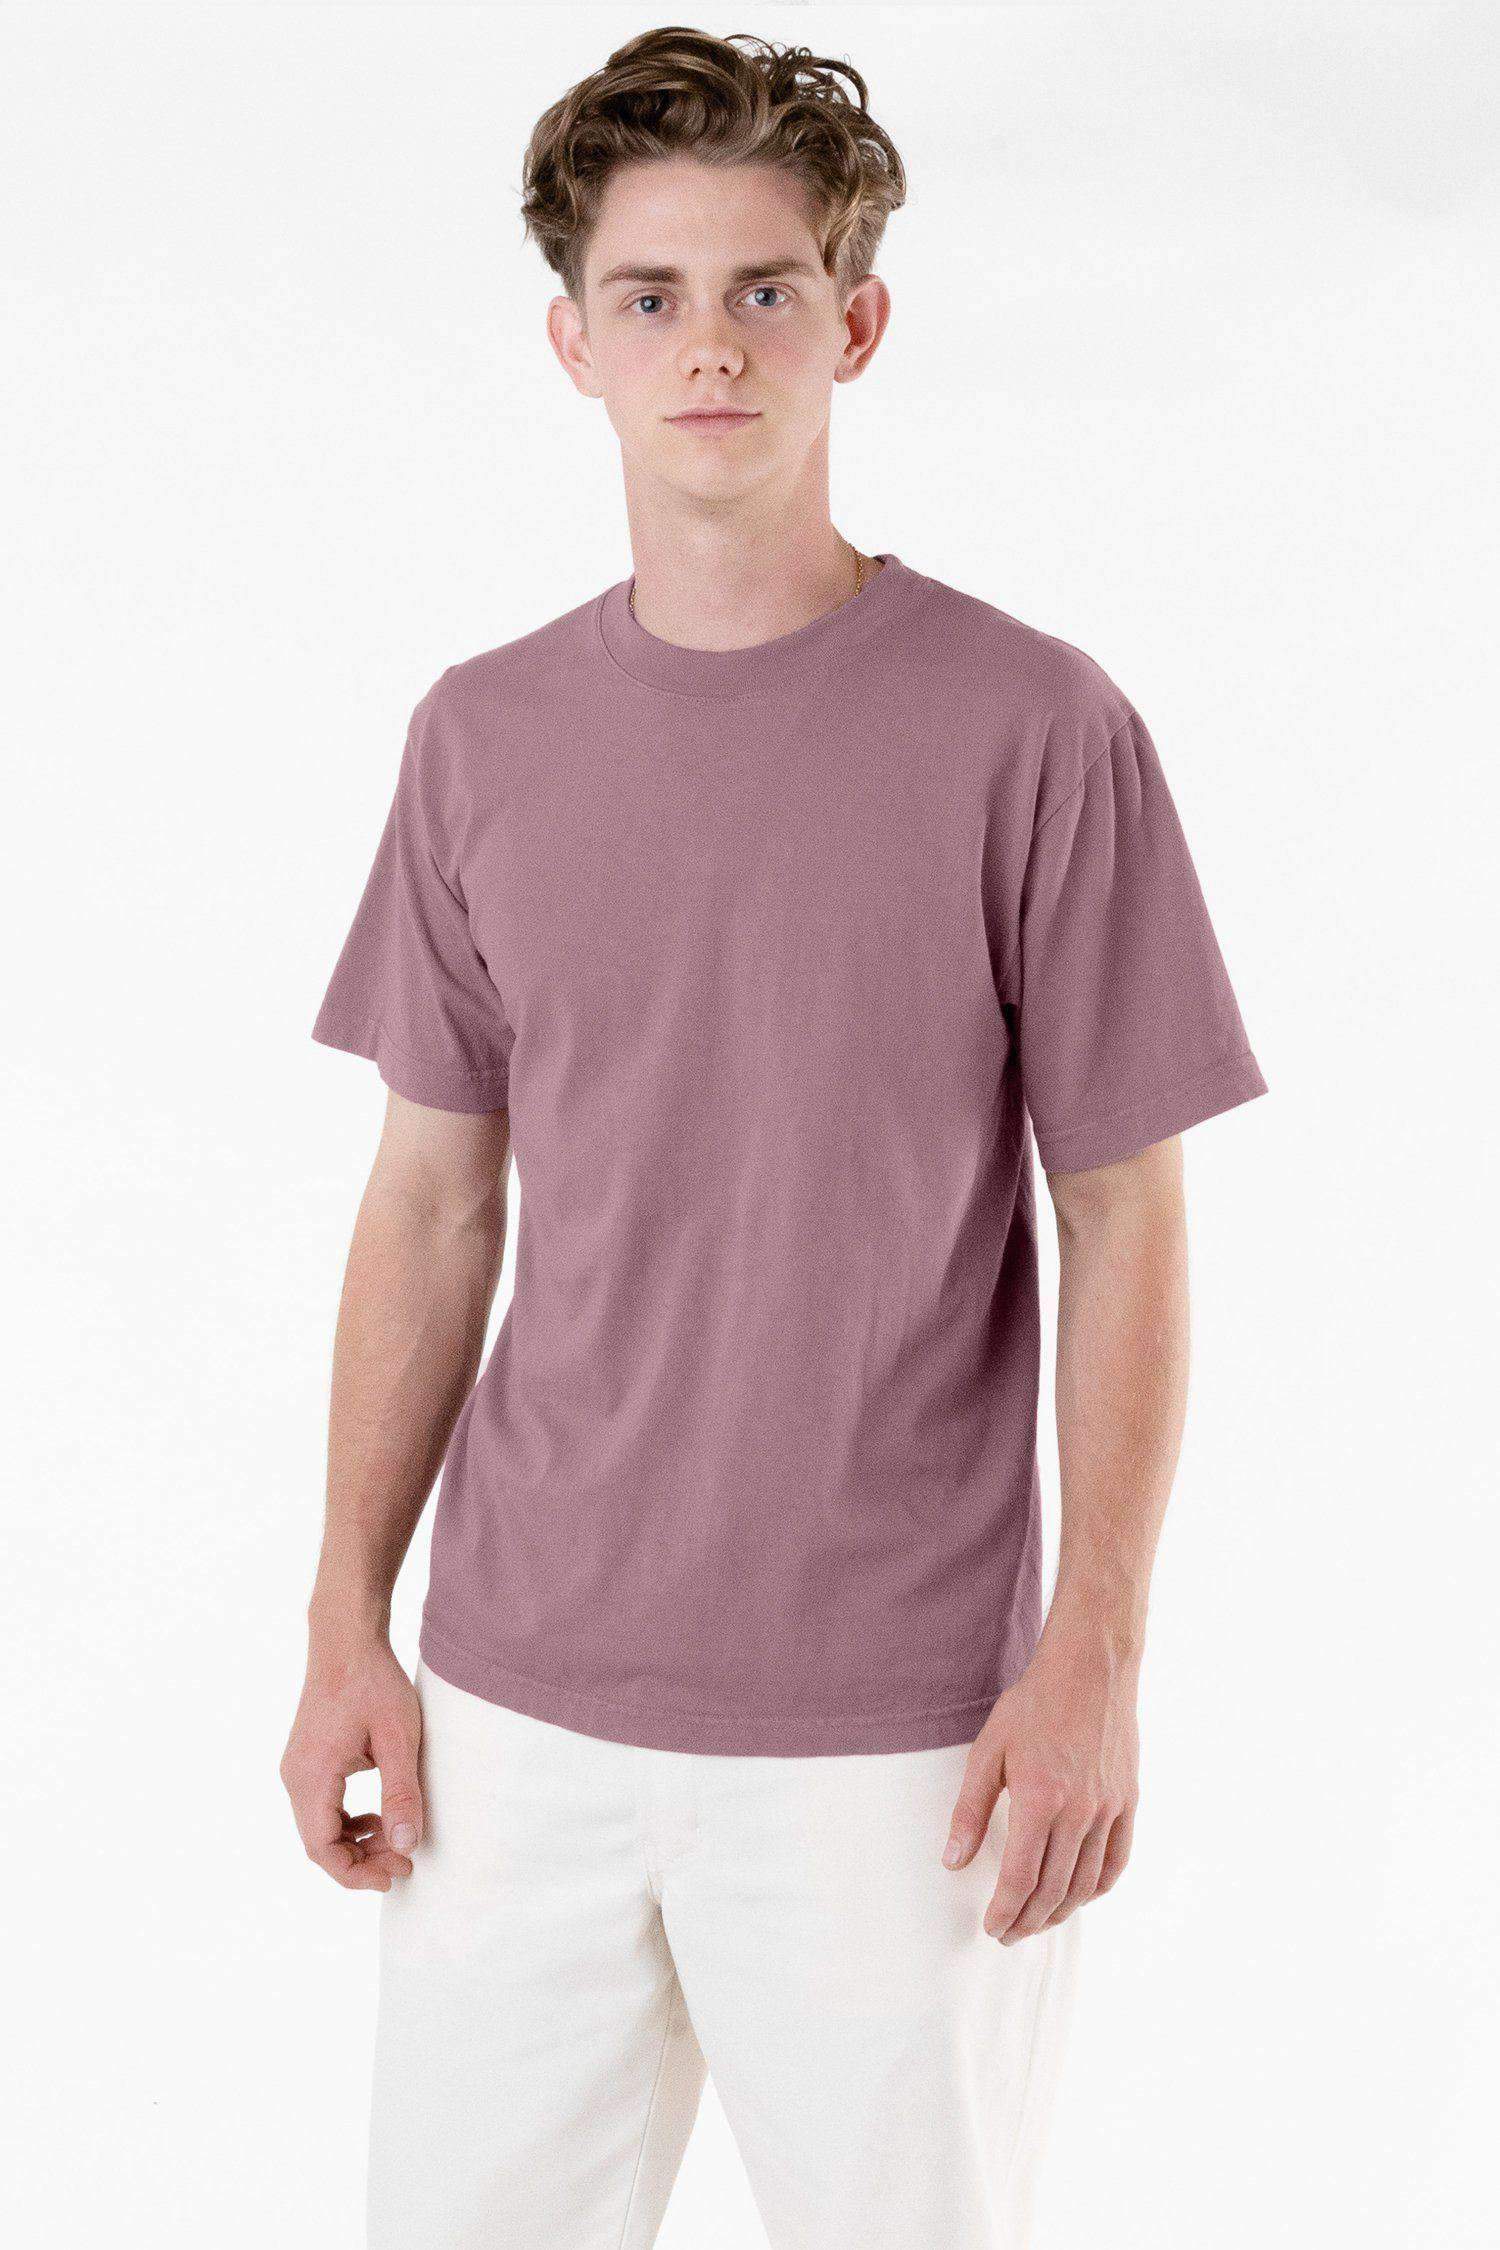 1801GD - 6.5oz Garment Dye Pastel Crew Neck T-Shirt T-Shirt Los Angeles Apparel Mauve XS 